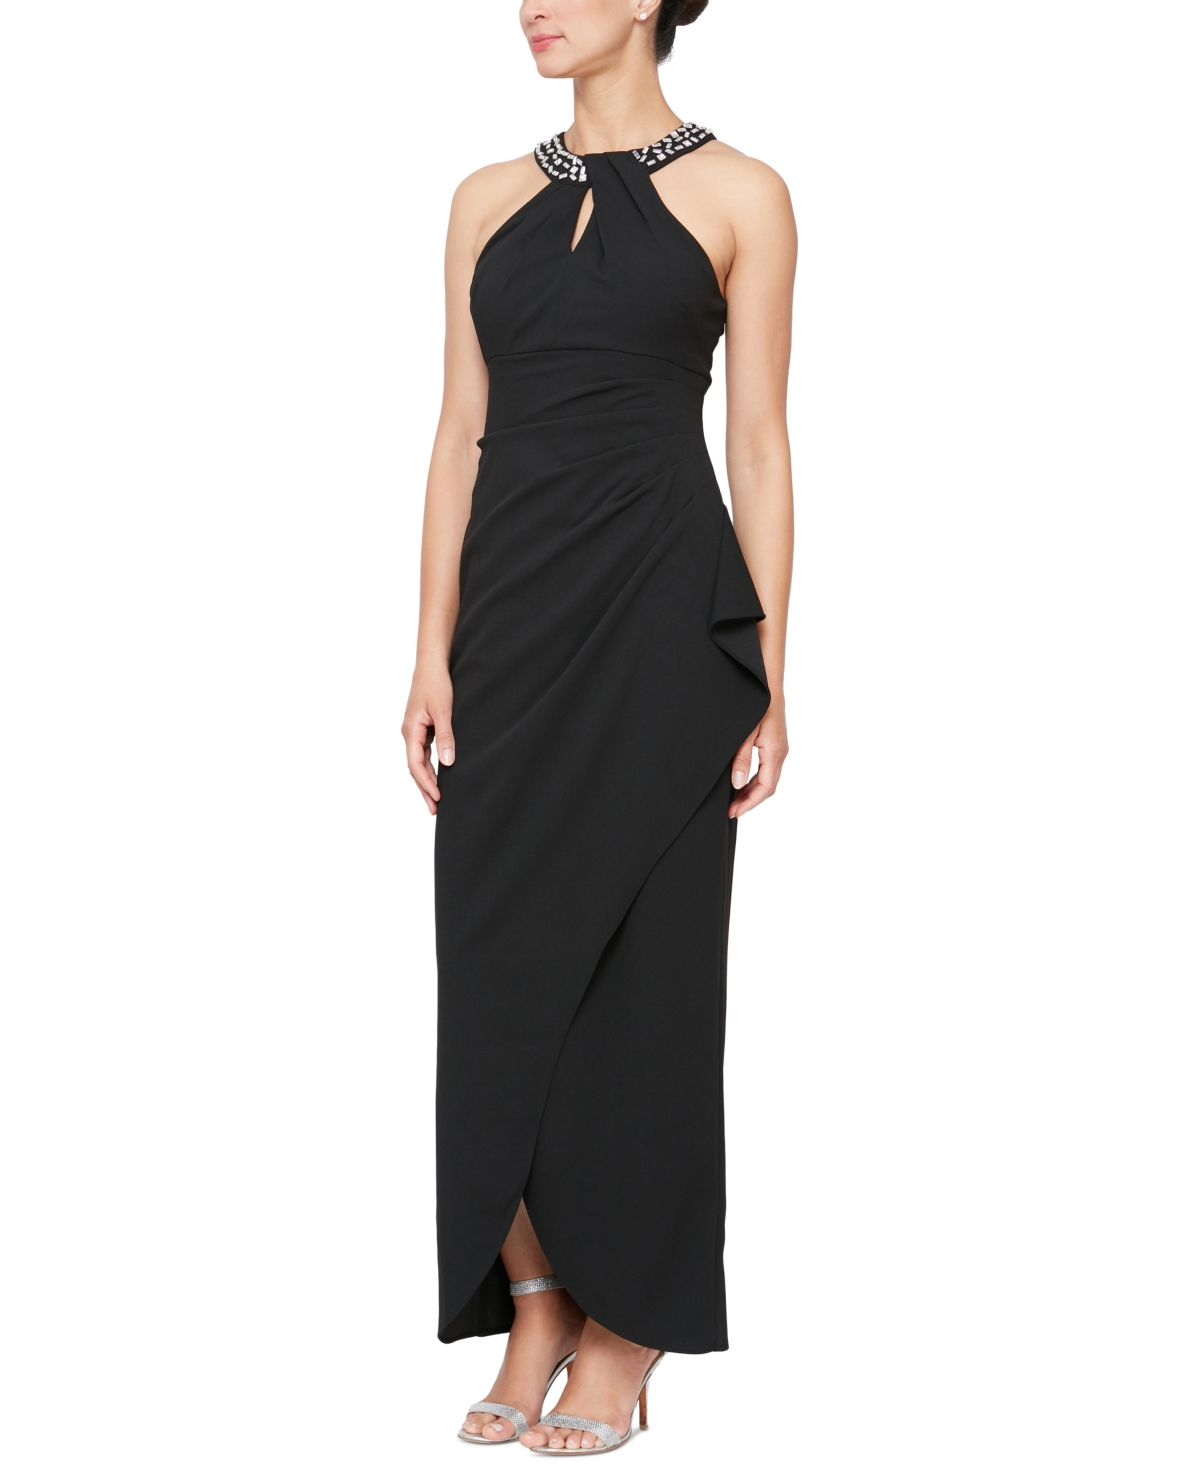 Petite Embellished-Neck Sleeveless Dress - Black